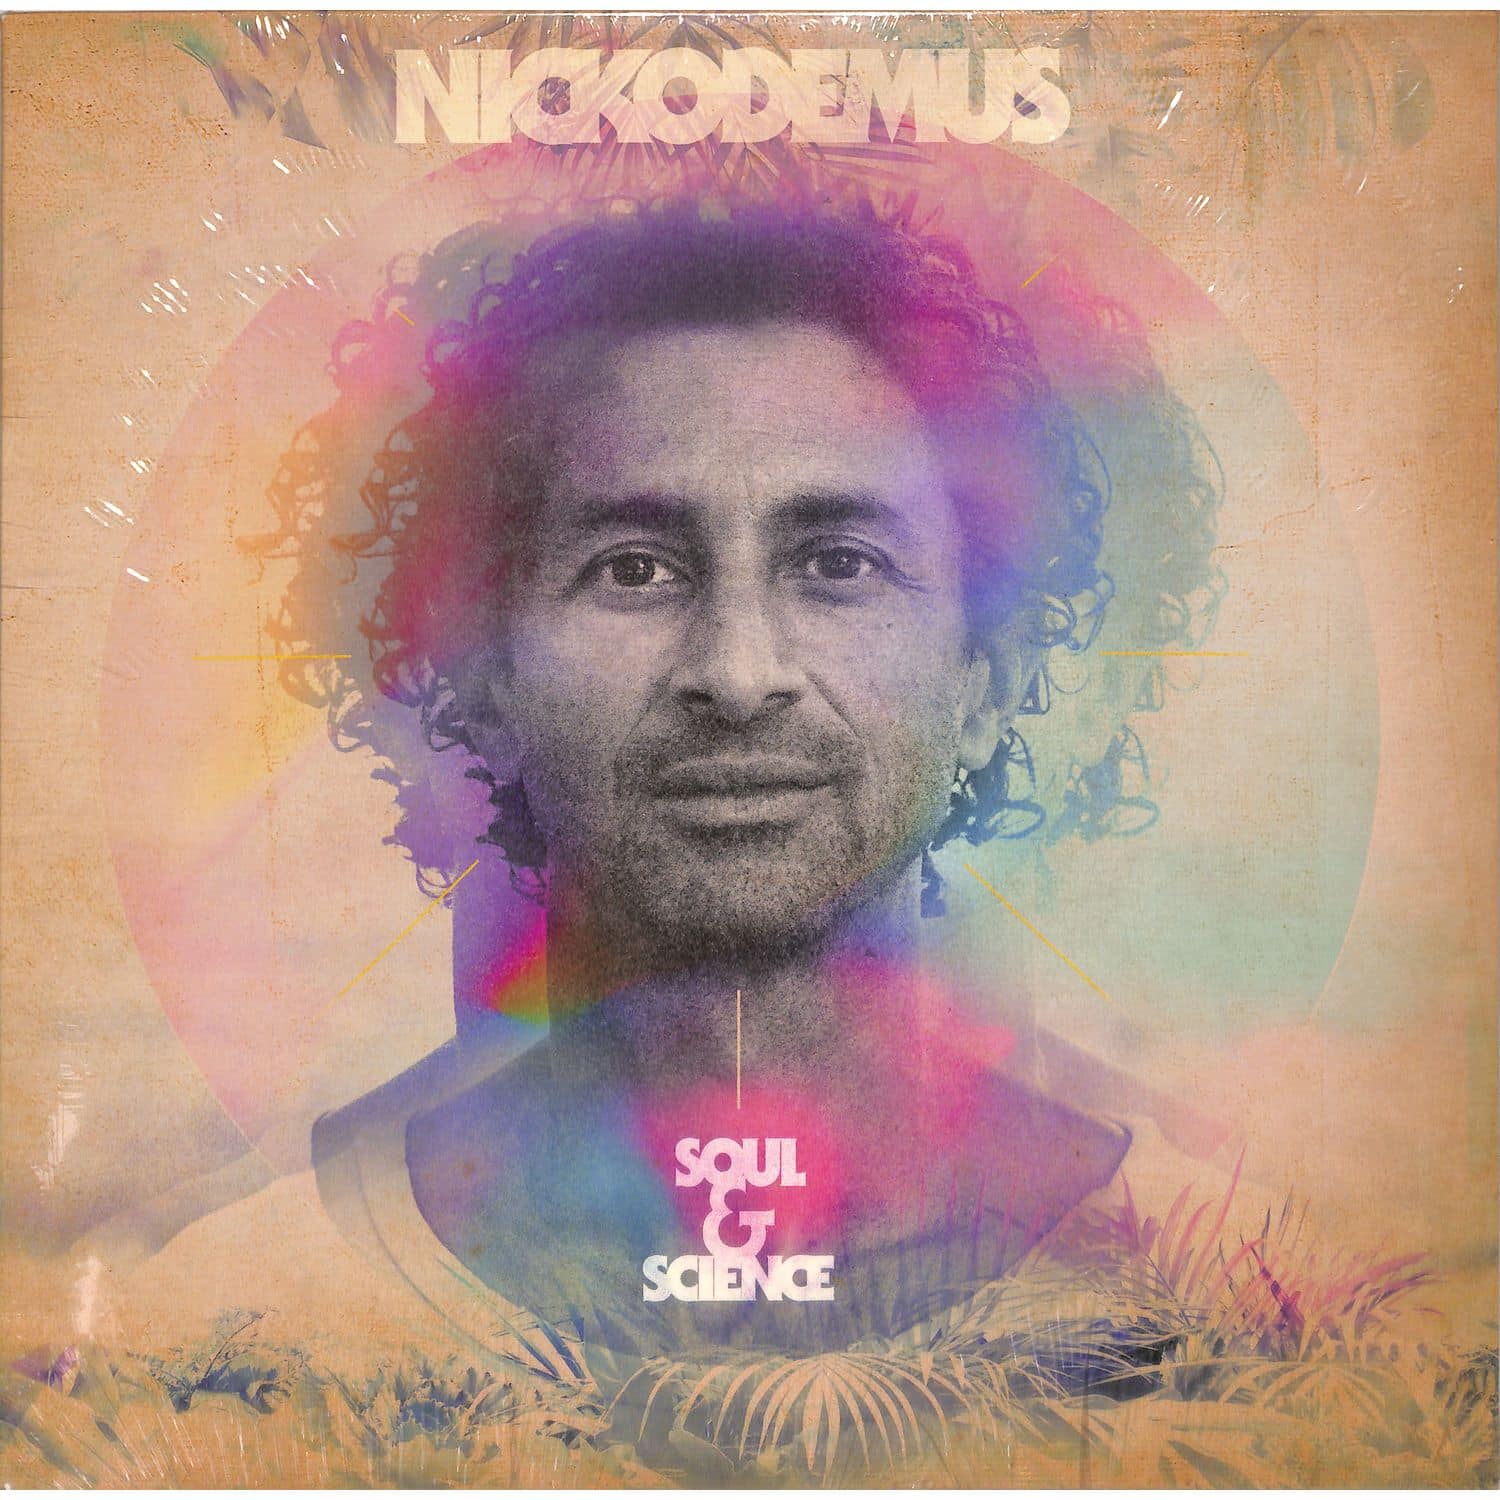 Nickodemus - SOUL & SCIENCE 